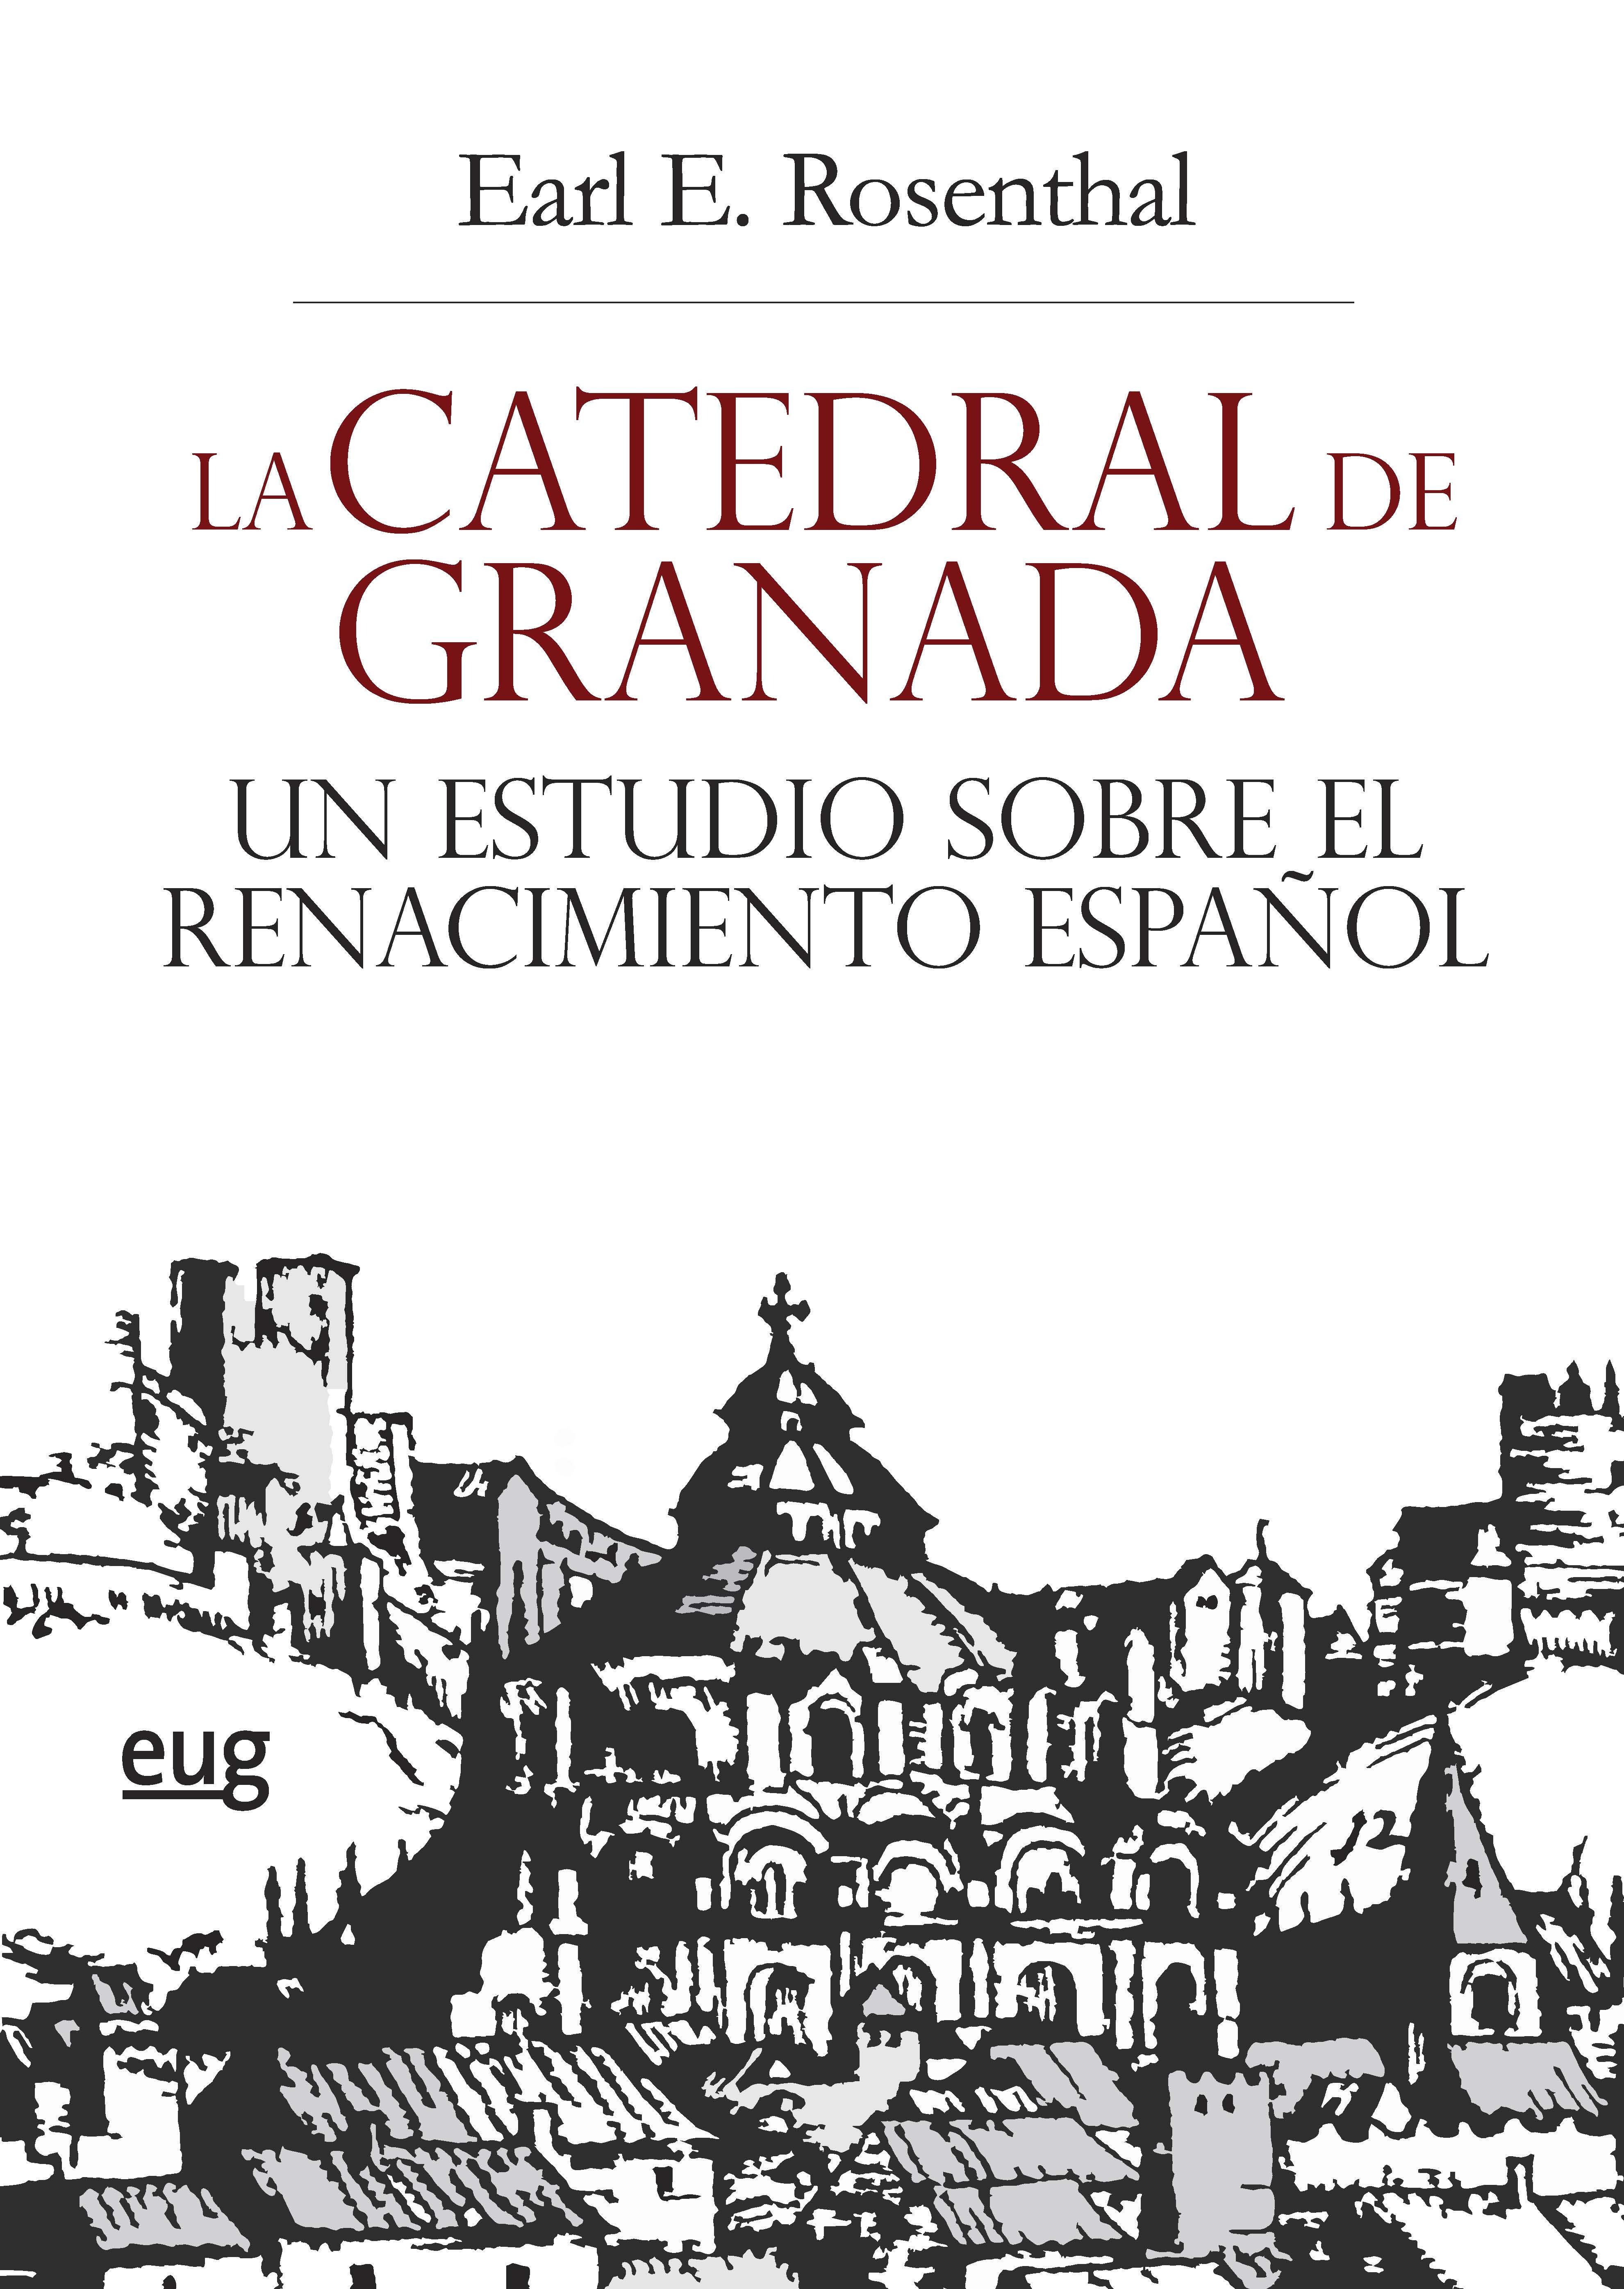 La catedral de Granada, objeto de estudio en el Libro del mes de febrero de la Universidad de Granada